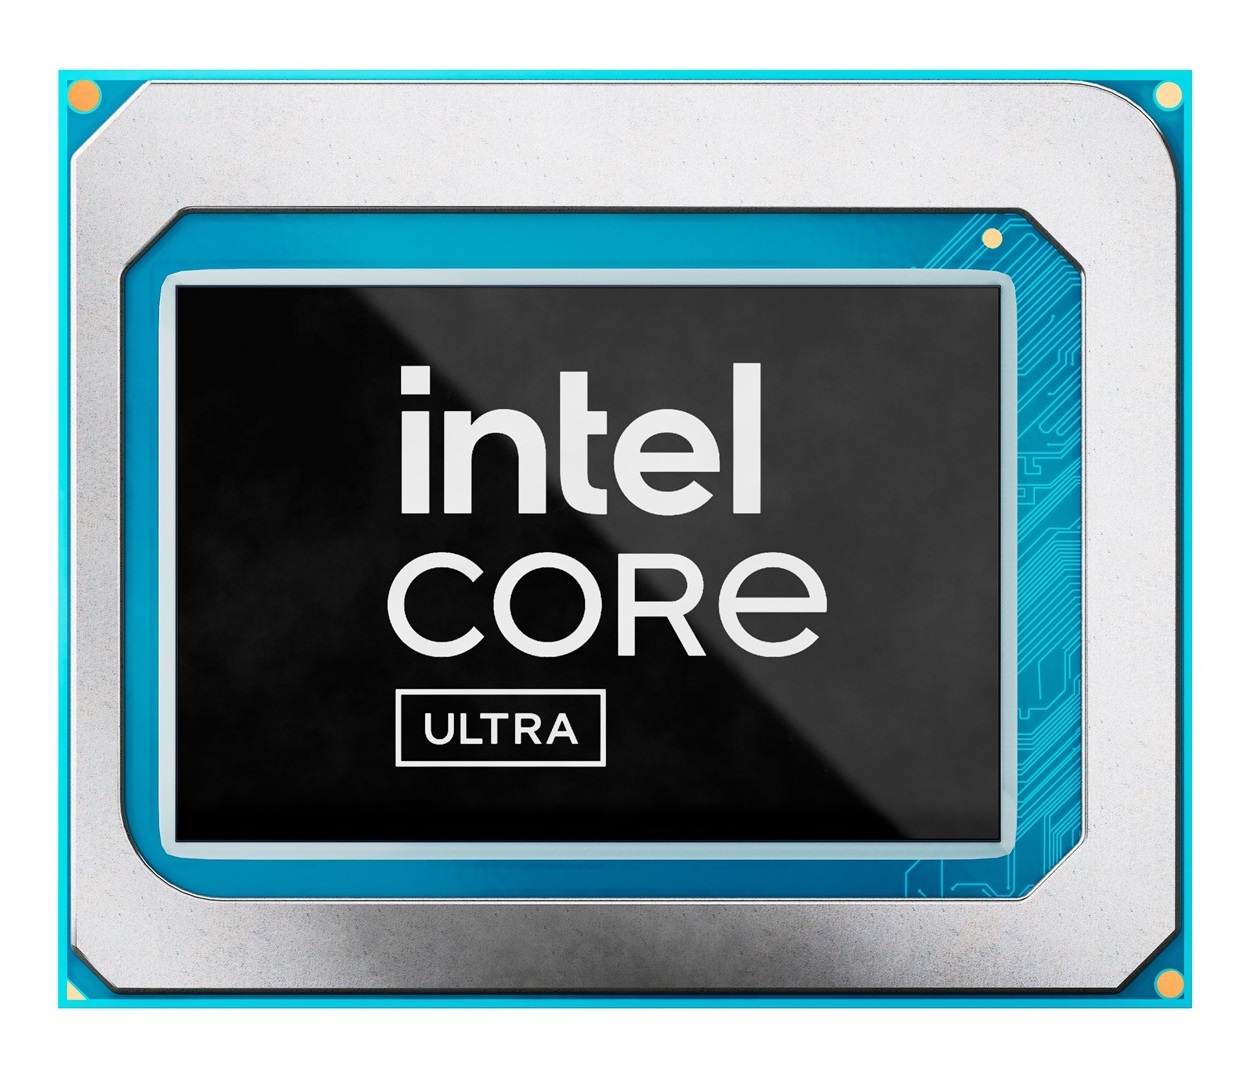 Intel Core Ultra chip shot